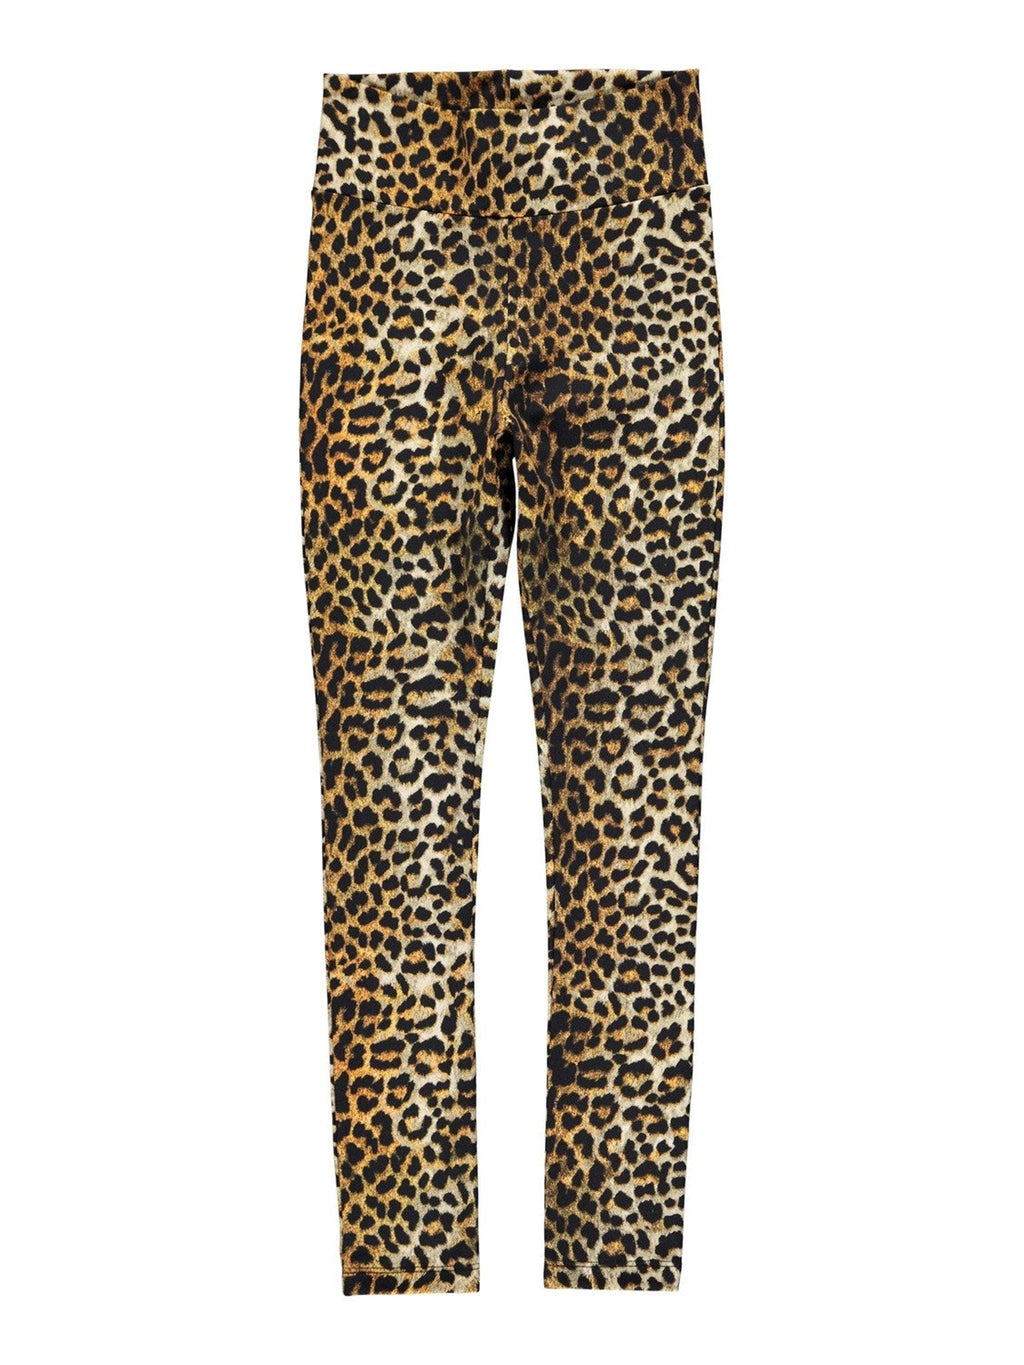 Patterned leggings - Leopard